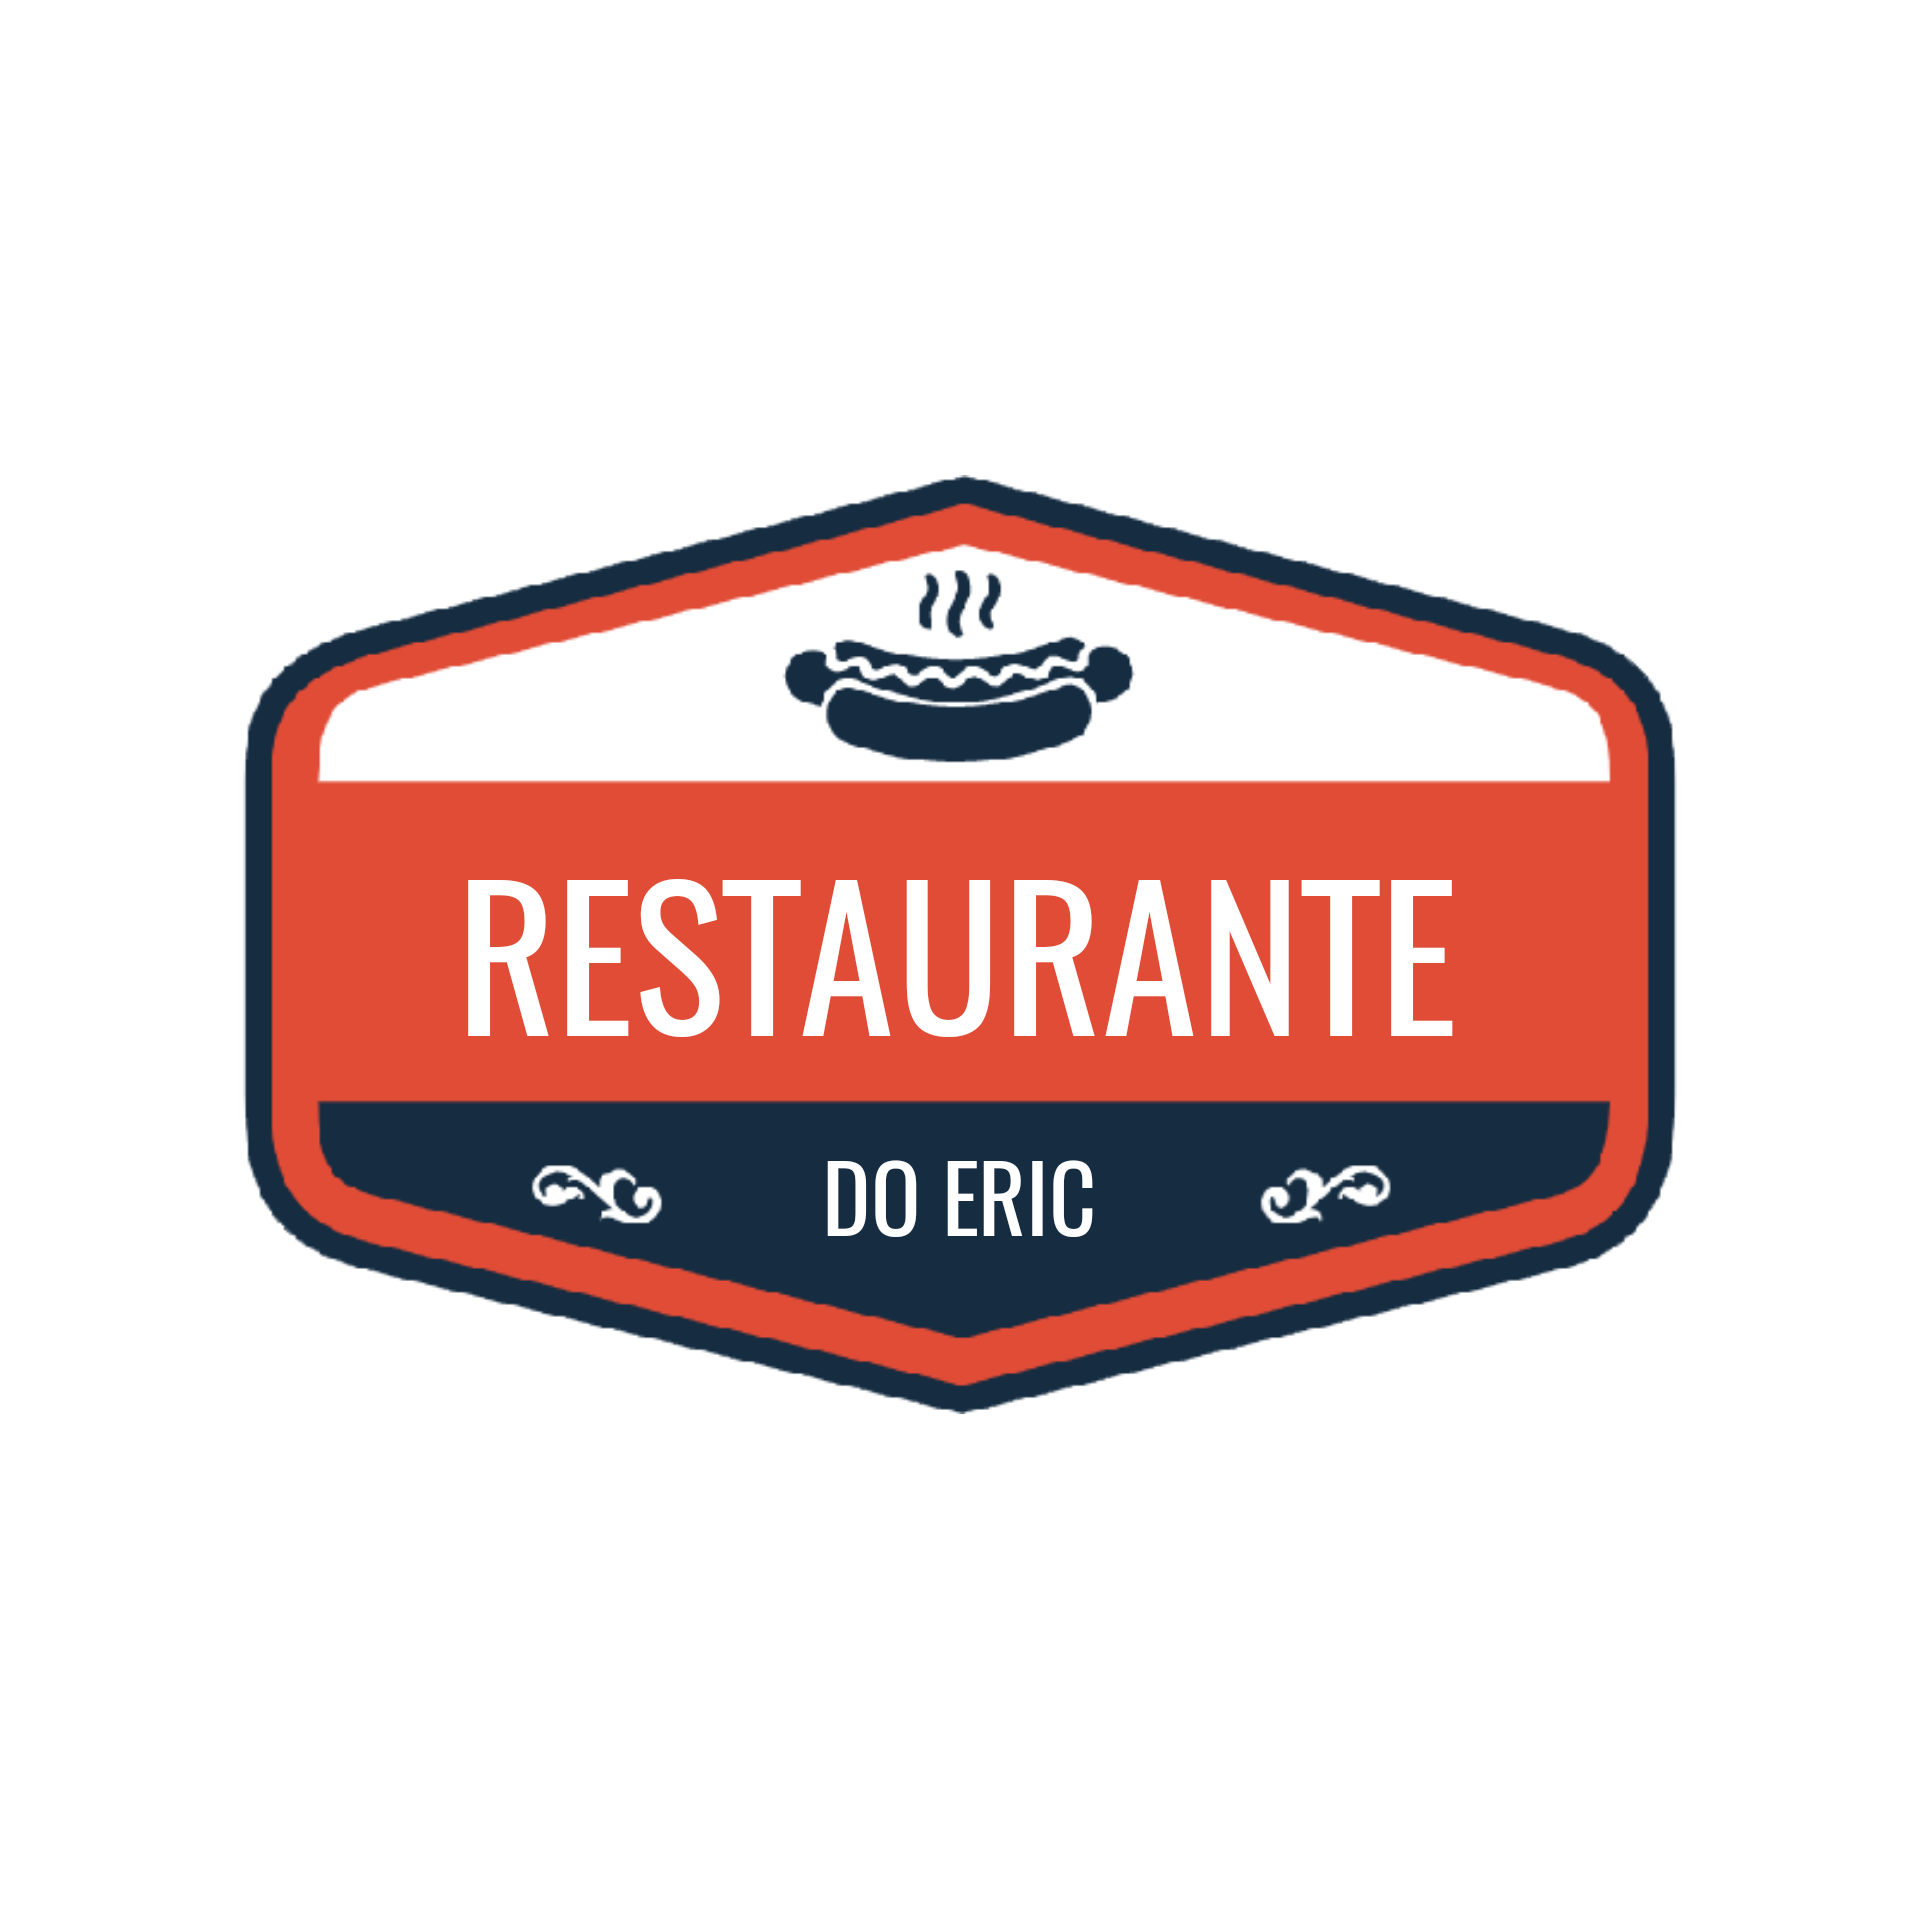 Restaurante do Eric - English